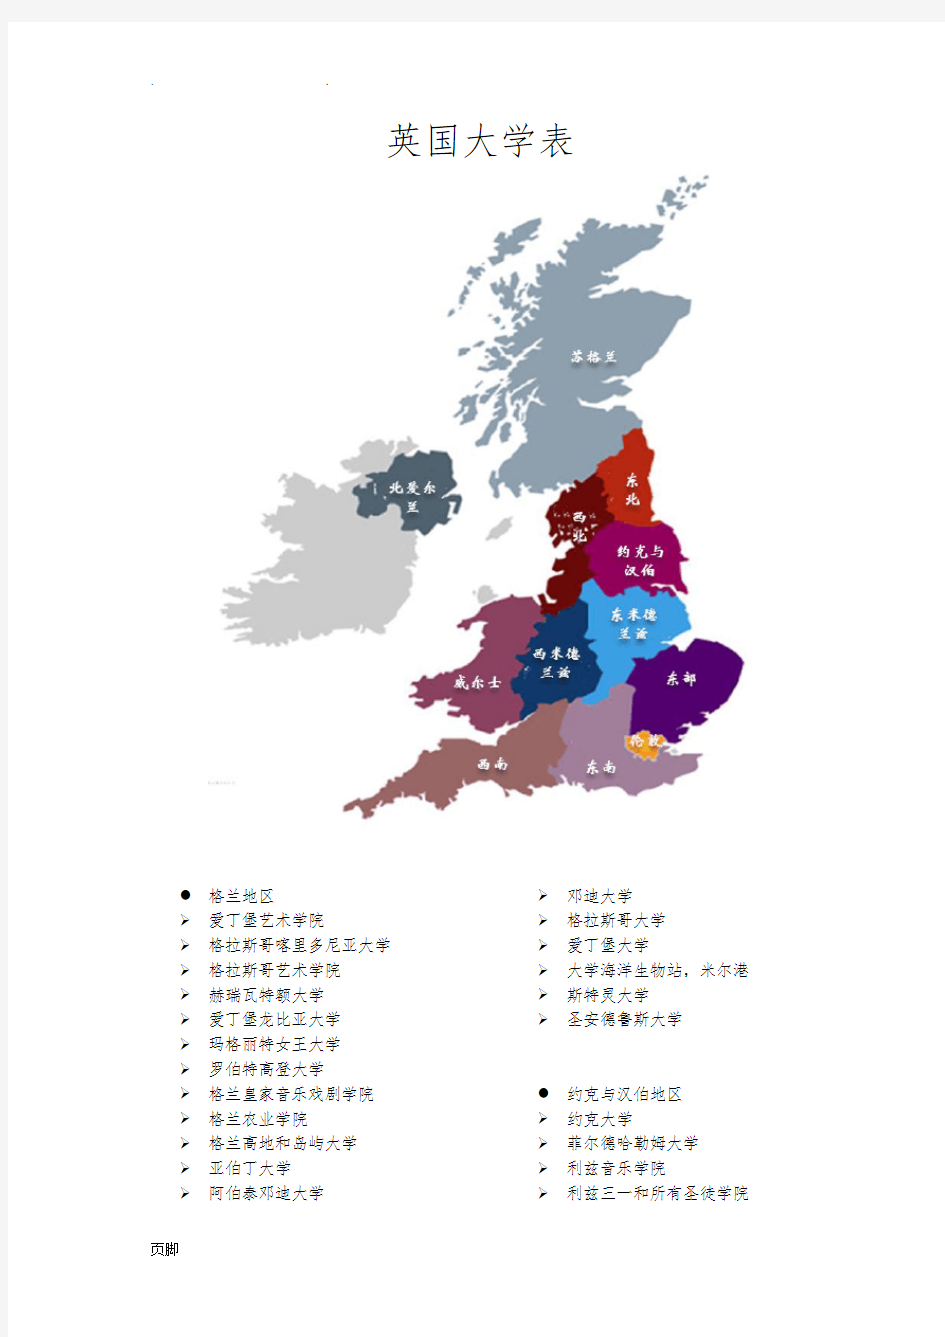 英国大学表(含地图按地区划分-亲自整理独版)